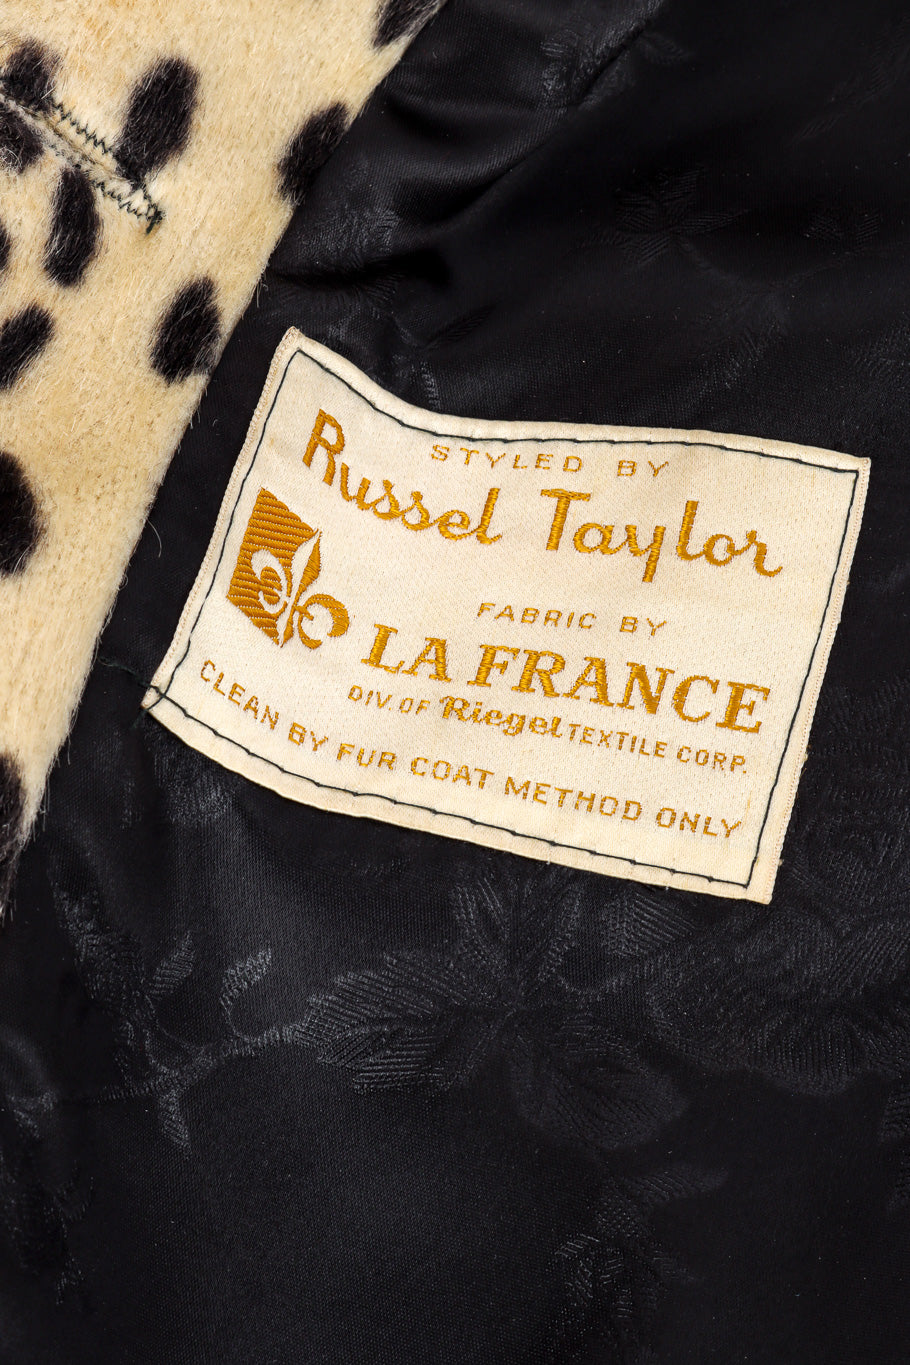 Cheetah Print Fur Coat by Russel Tayler label @recessla